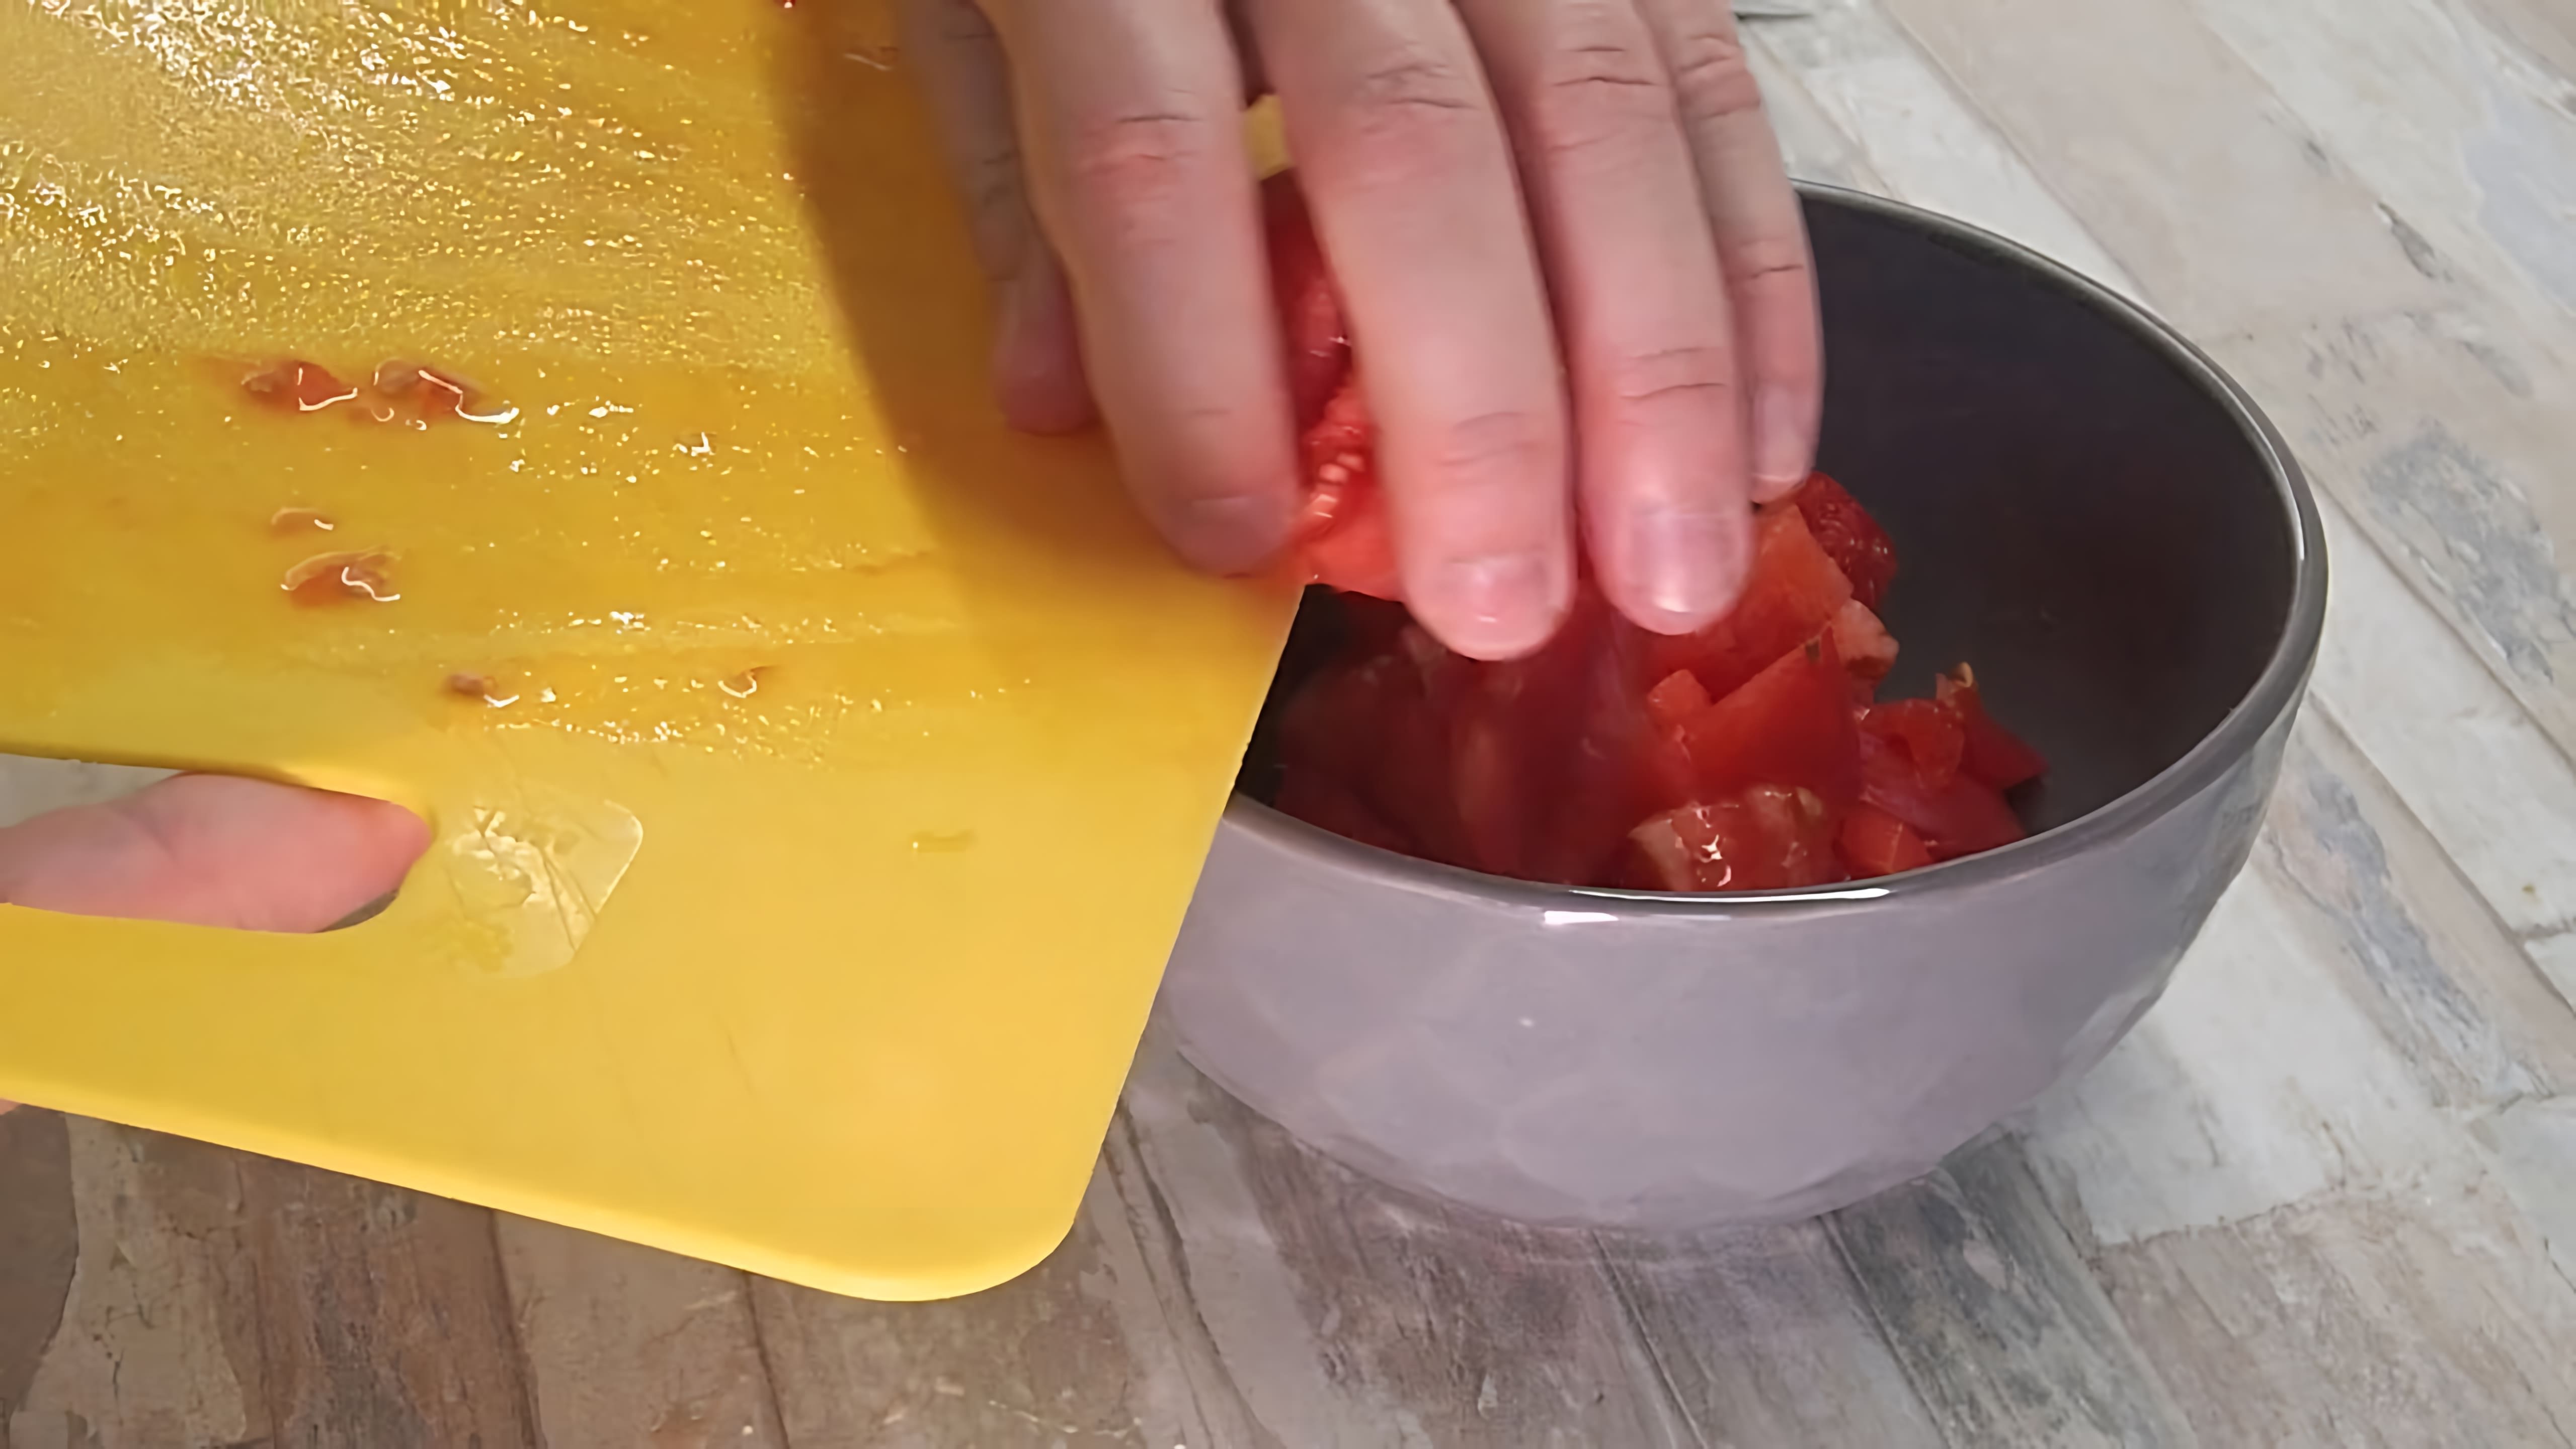 В этом видео-ролике мы увидим, как приготовить вкусное блюдо - помидор со сметаной